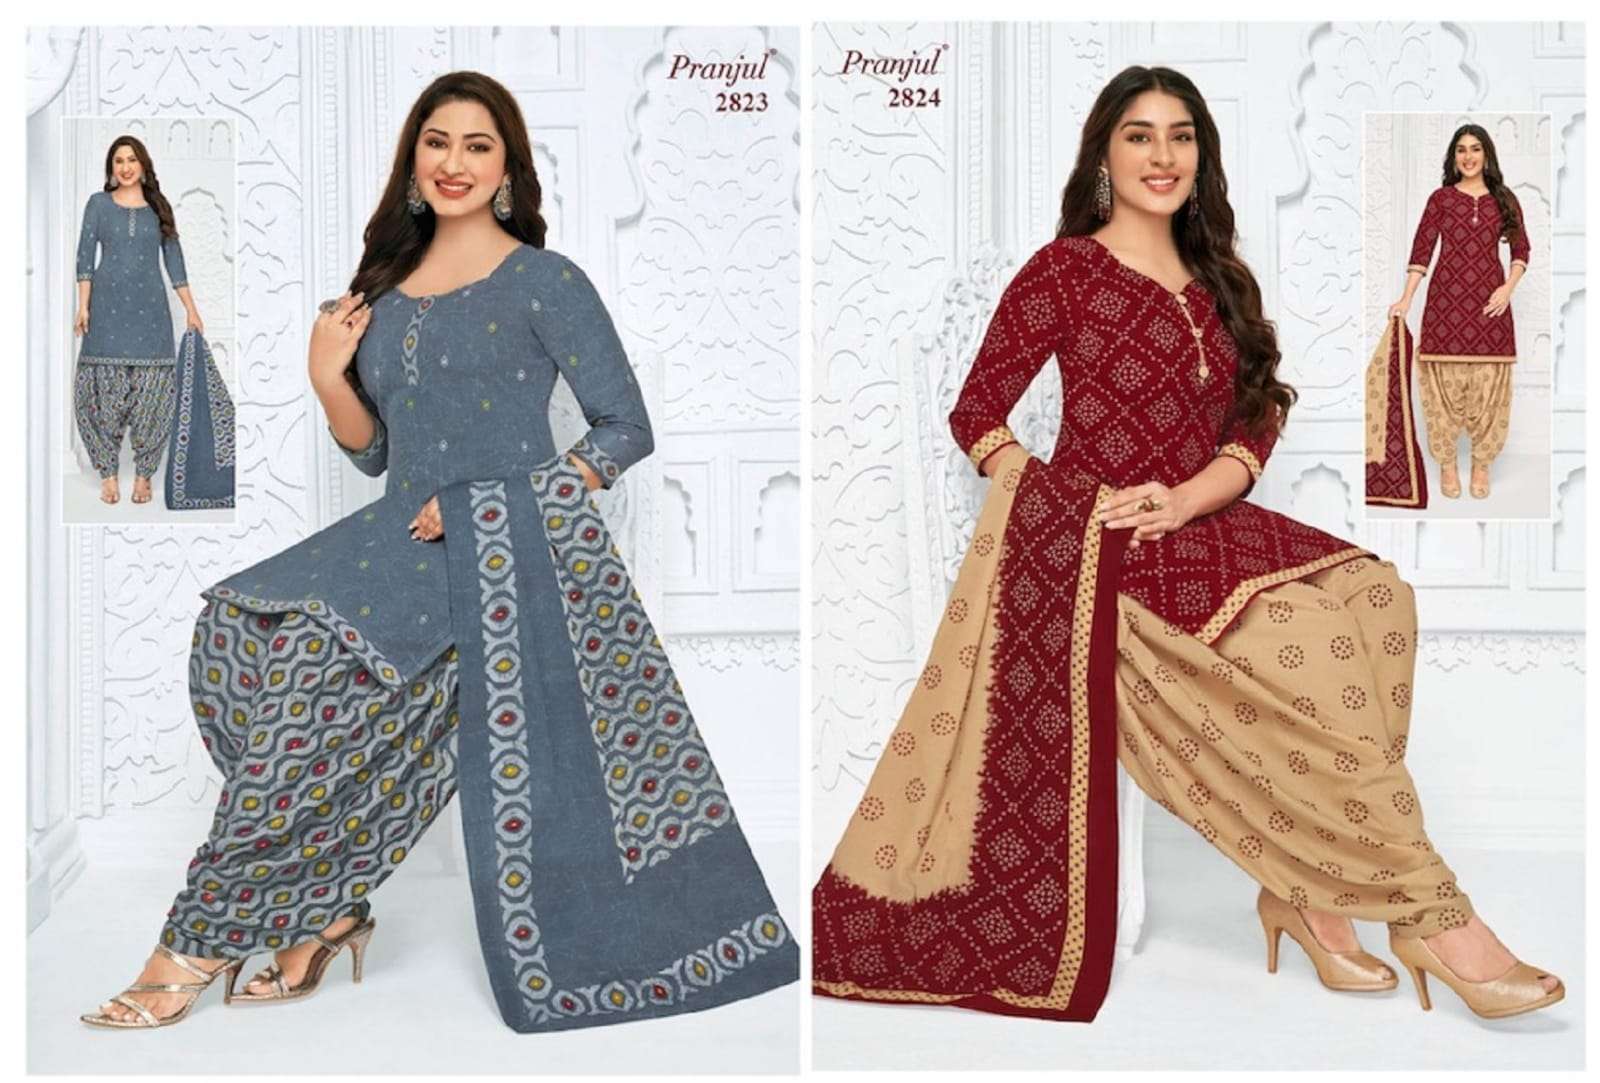 Pranjul Priyanshi Vol 30 Dress Material New Catalogue at Rs 400 | Natraj  Loge | Jetpur | ID: 2853325168062